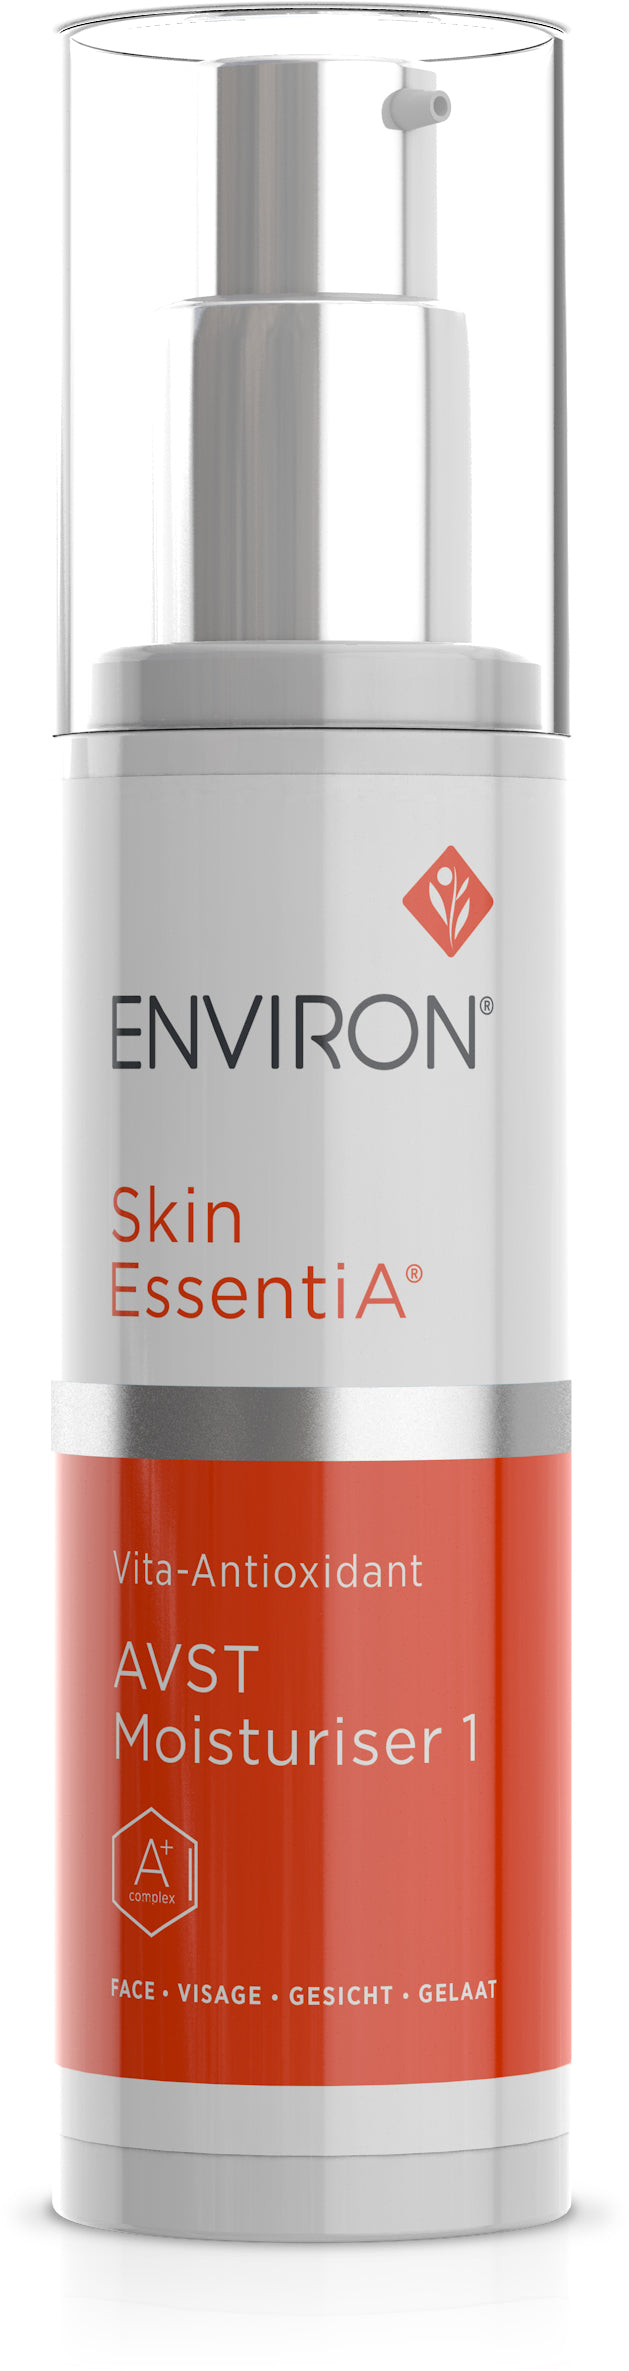 Skin EssentiA | Vita-Antioxidant  | AVST Moisturiser 1